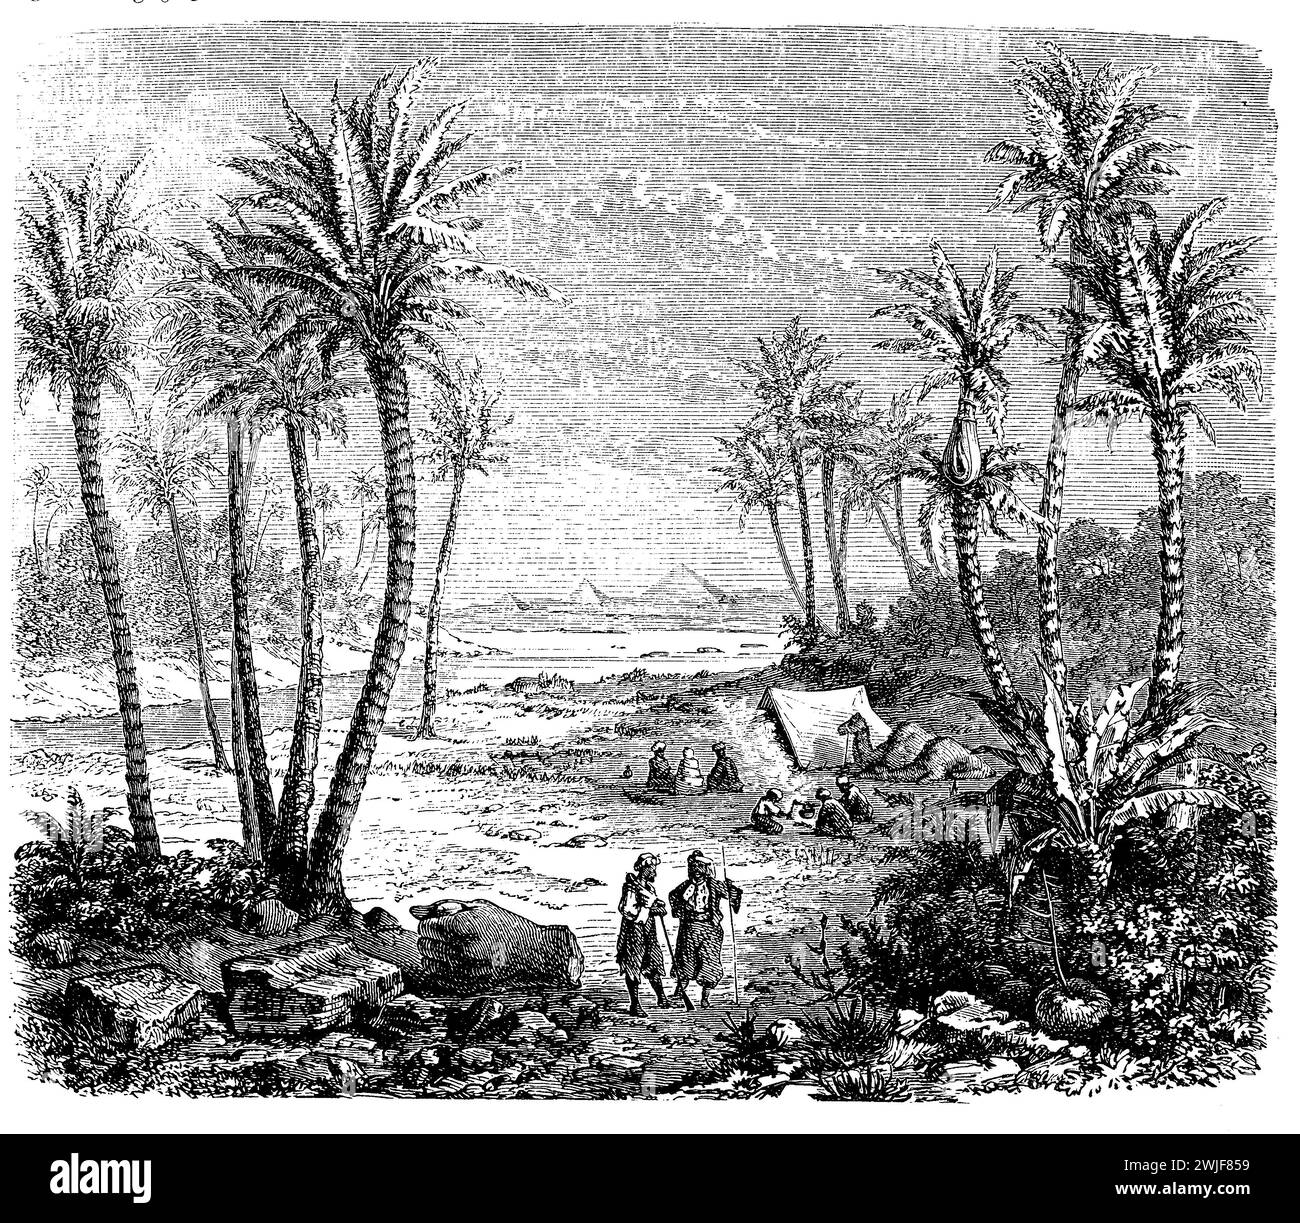 Paysage tropical africain avec des arbres Phoenix dactylifera ou palmiers dattiers cultivés pour les fruits sucrés comestibles, illustration du 19ème siècle Banque D'Images